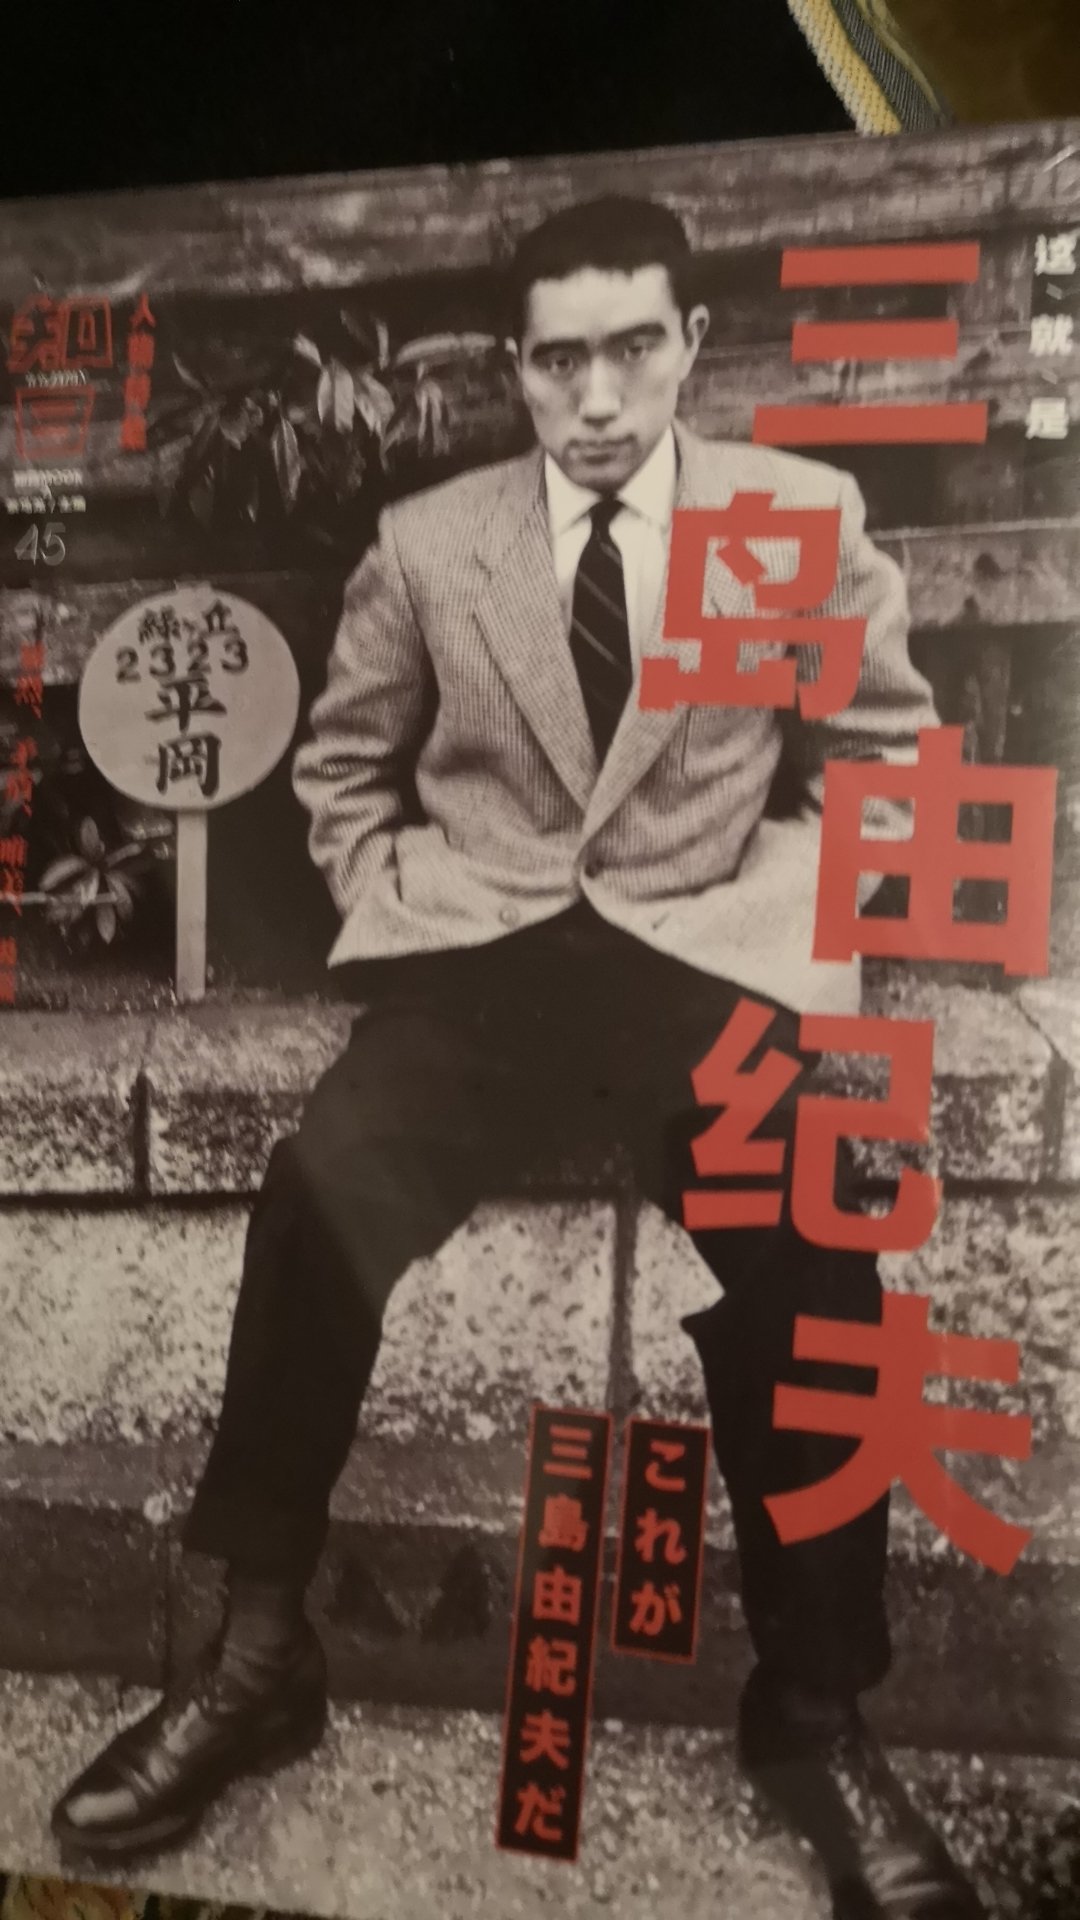 一个谜一样的男人，却是日本文化性格的真实体现。值得一读。